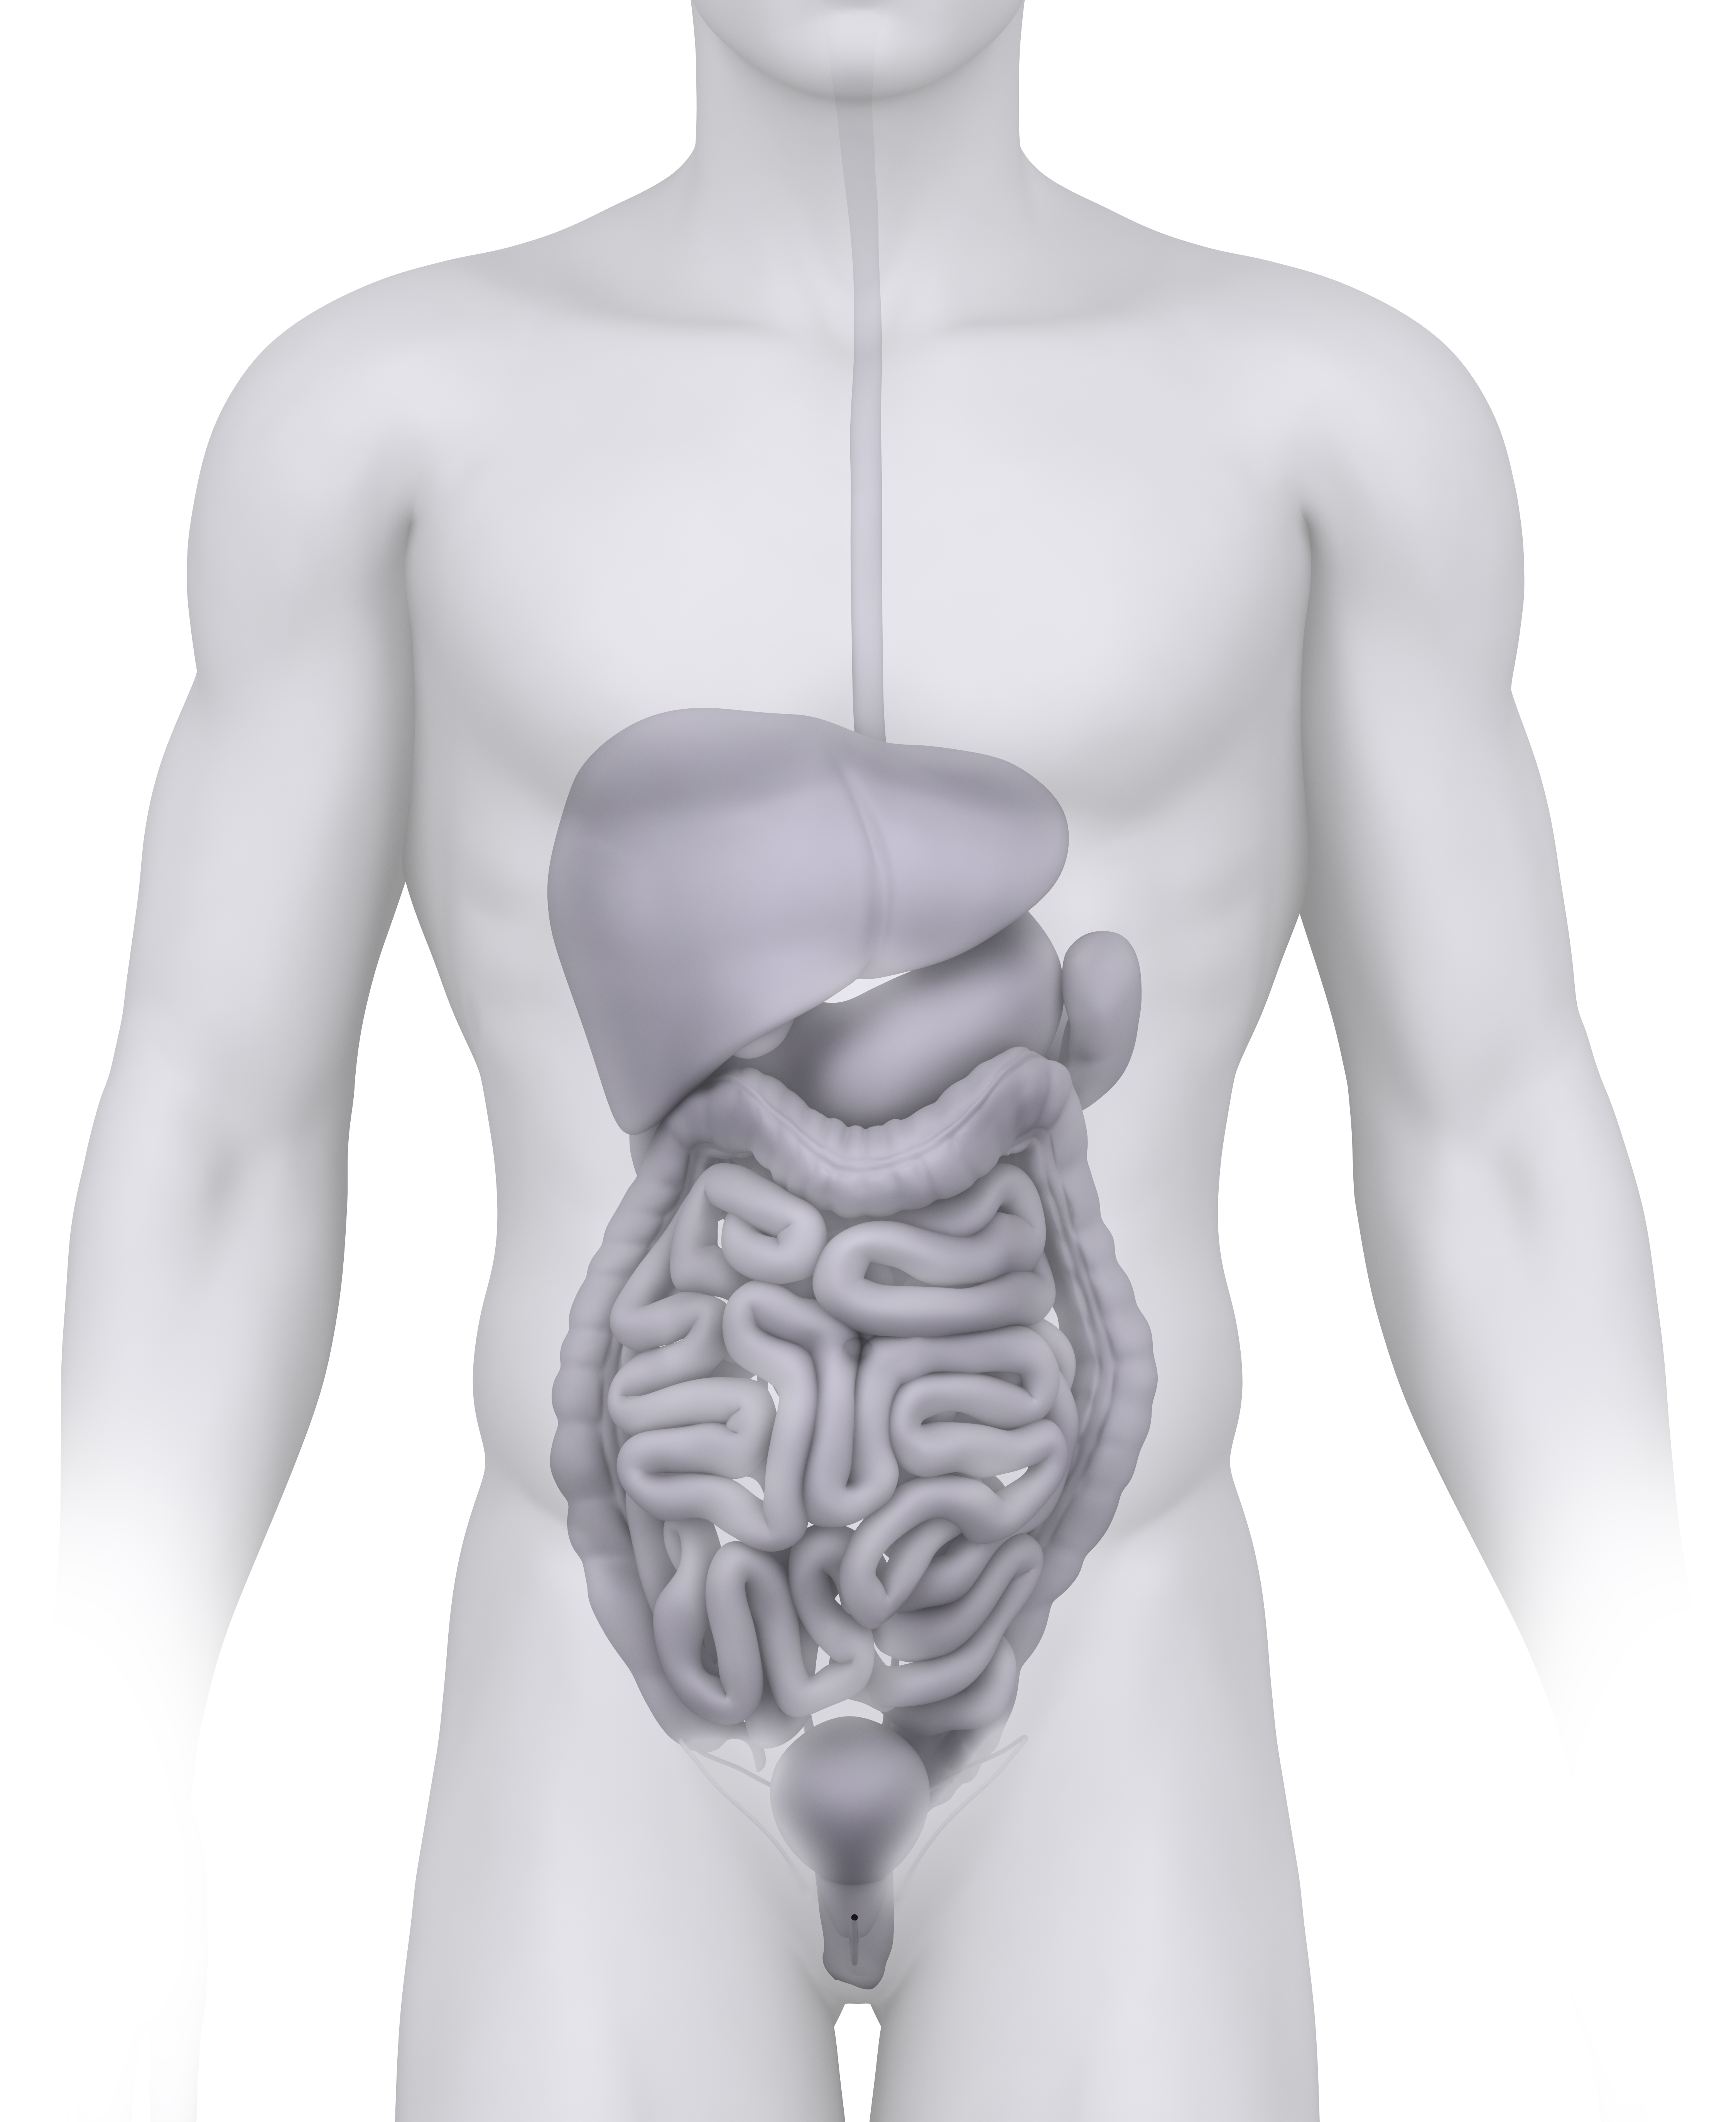 Селезенка орган брюшной полости человека. Органы брюшной полости человека. Анатомия органов брюшной полости.